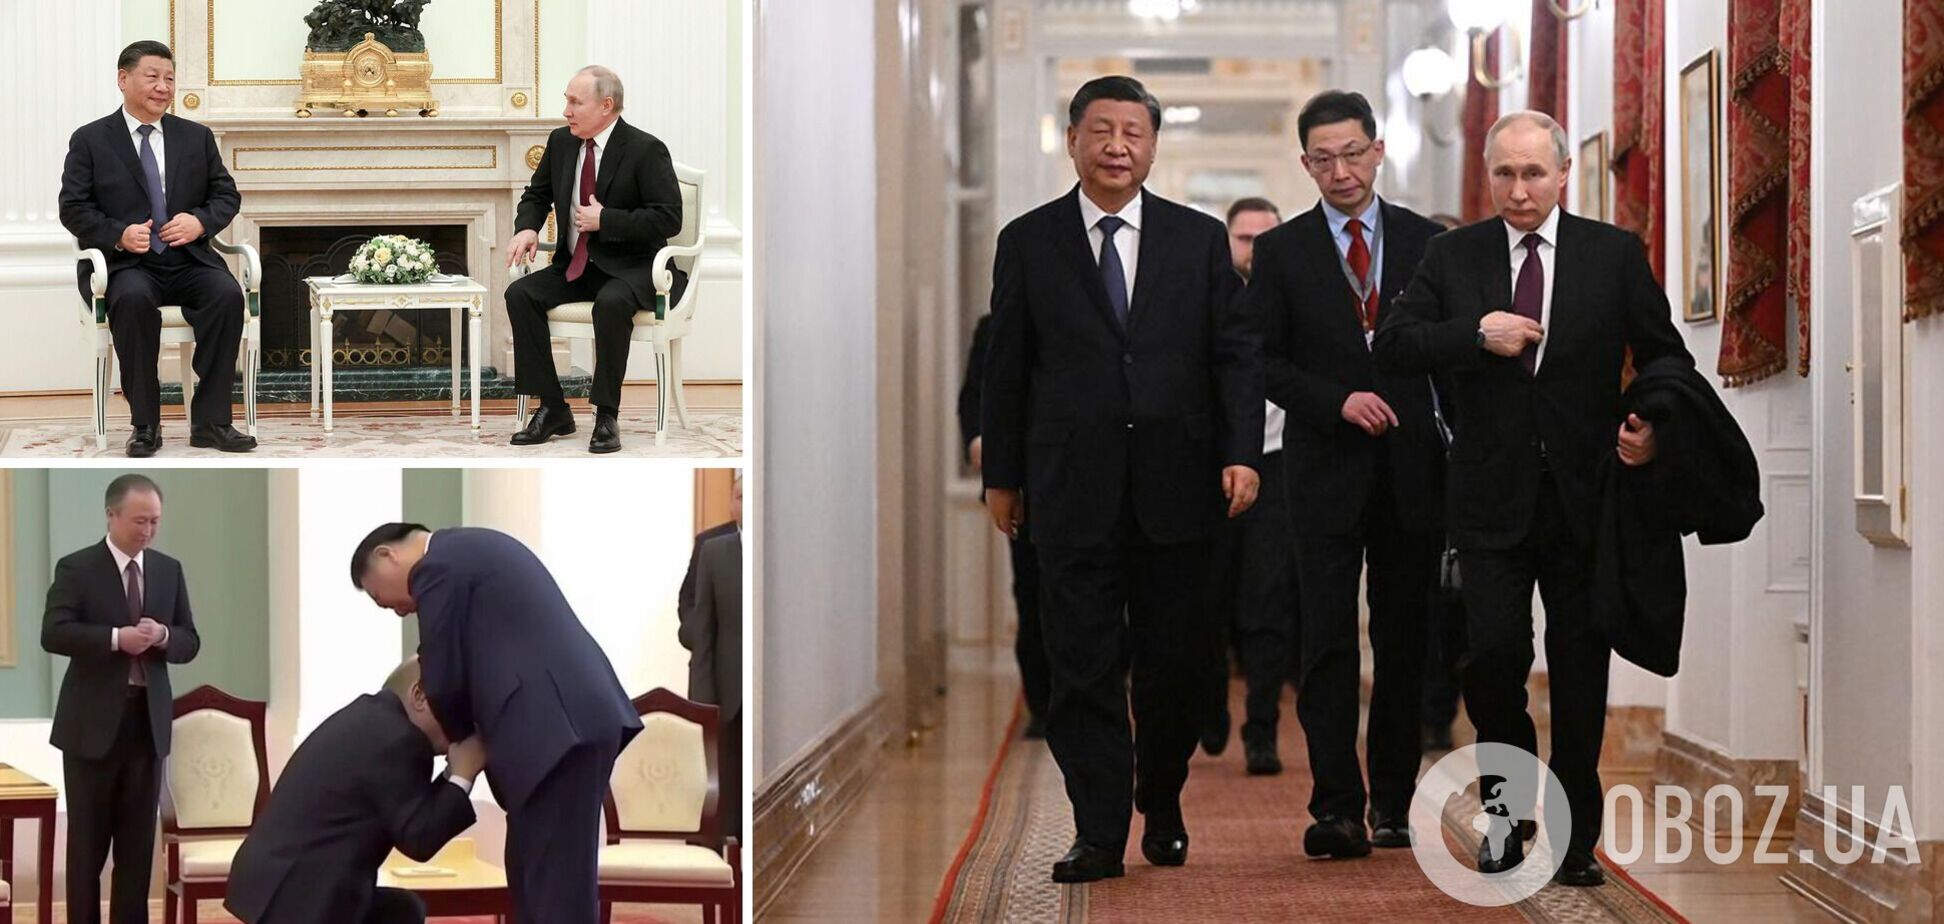 Ожидания Путина не оправдались: в ISW указали на важный нюанс в риторике Си Цзиньпина и оценили результат переговоров